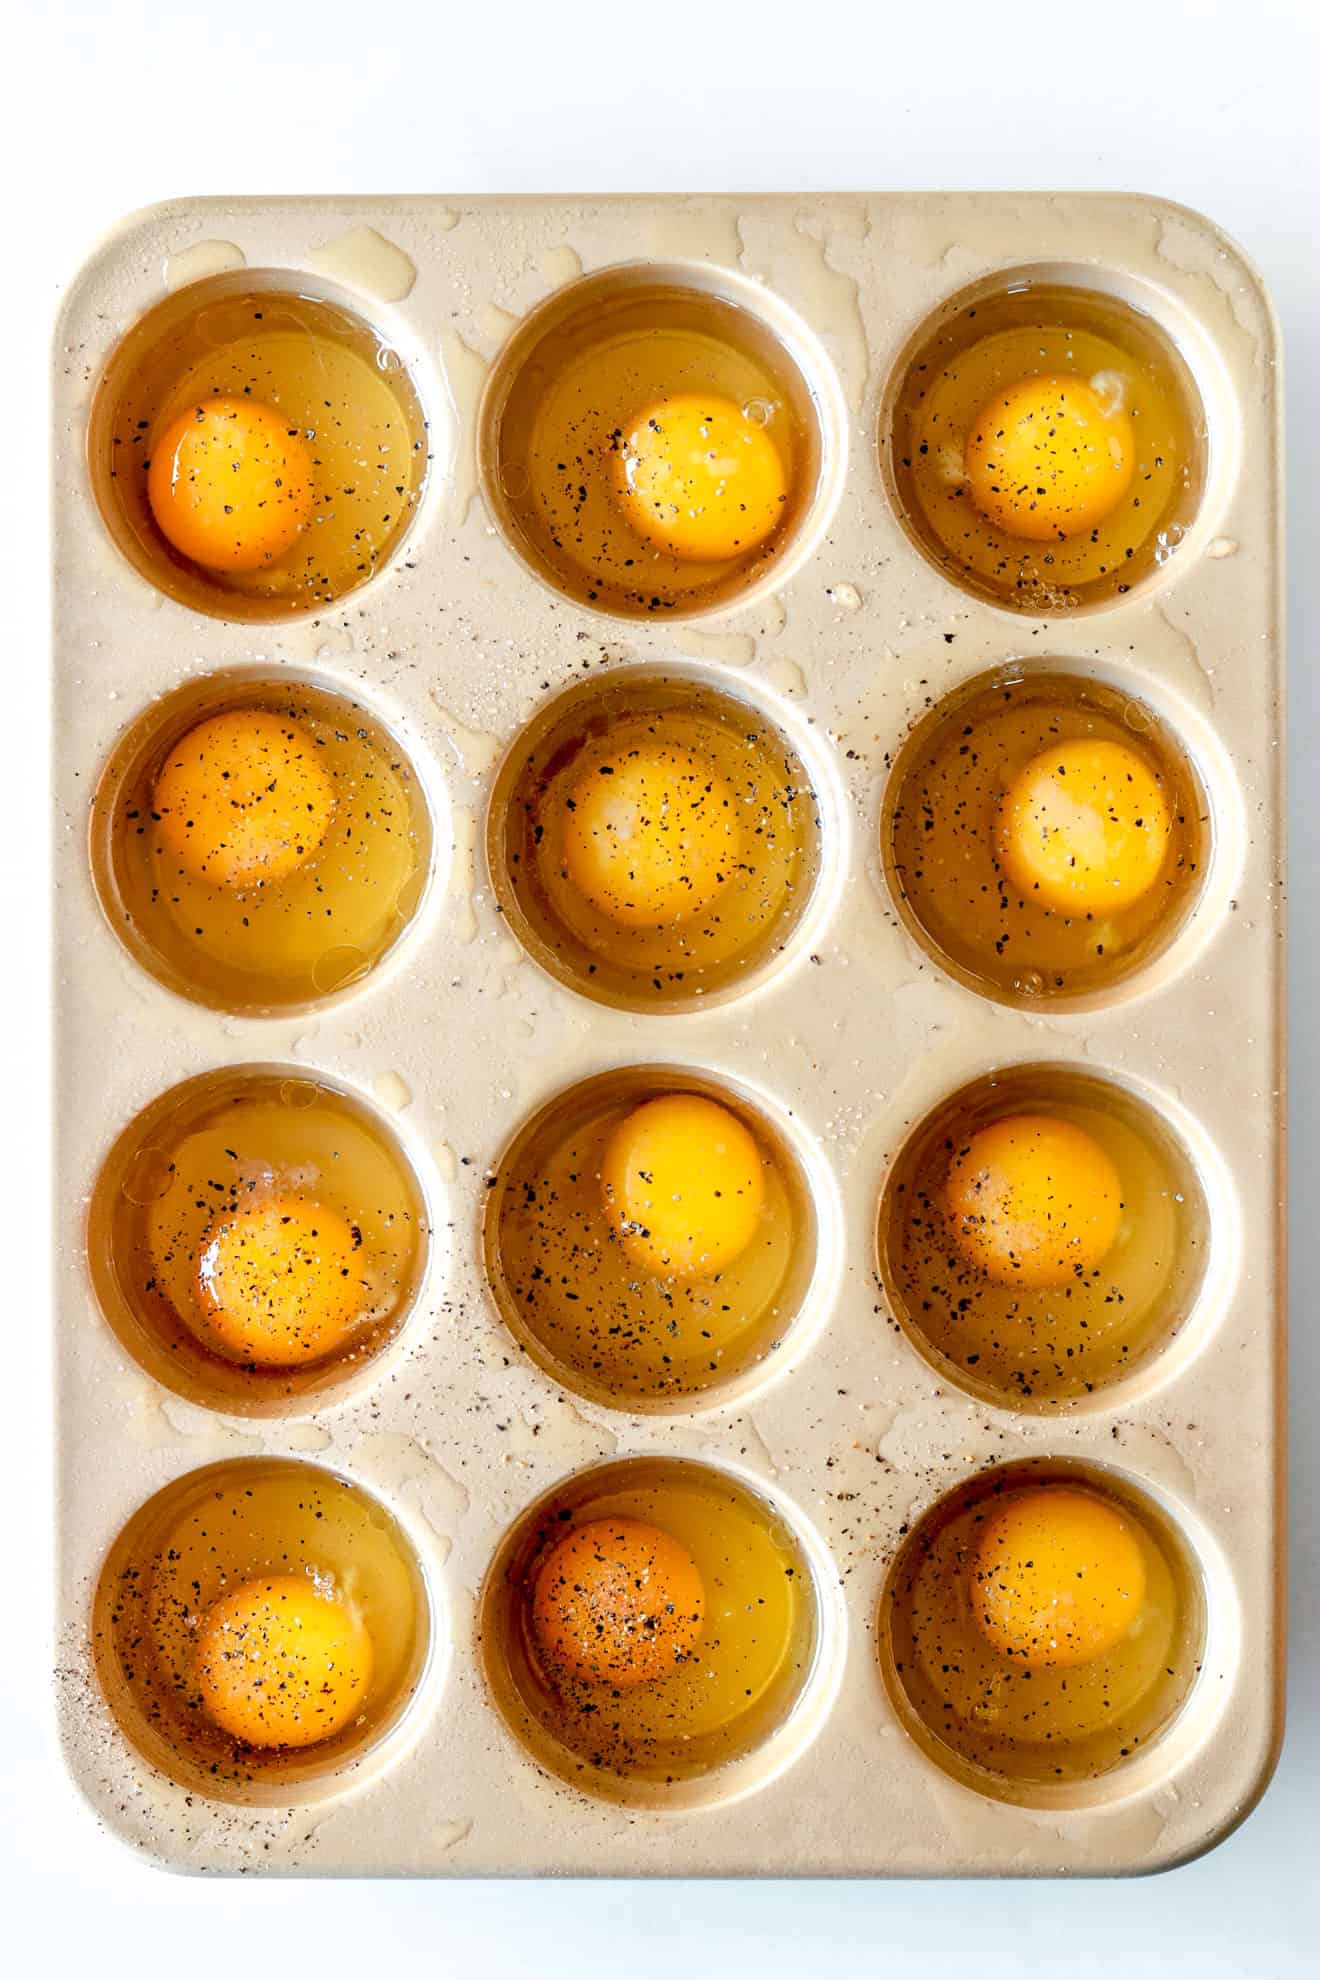 Luchtvaart Gehoorzaamheid Mortal Oven-Baked Eggs in a Muffin Tin | The Toasted Pine Nut